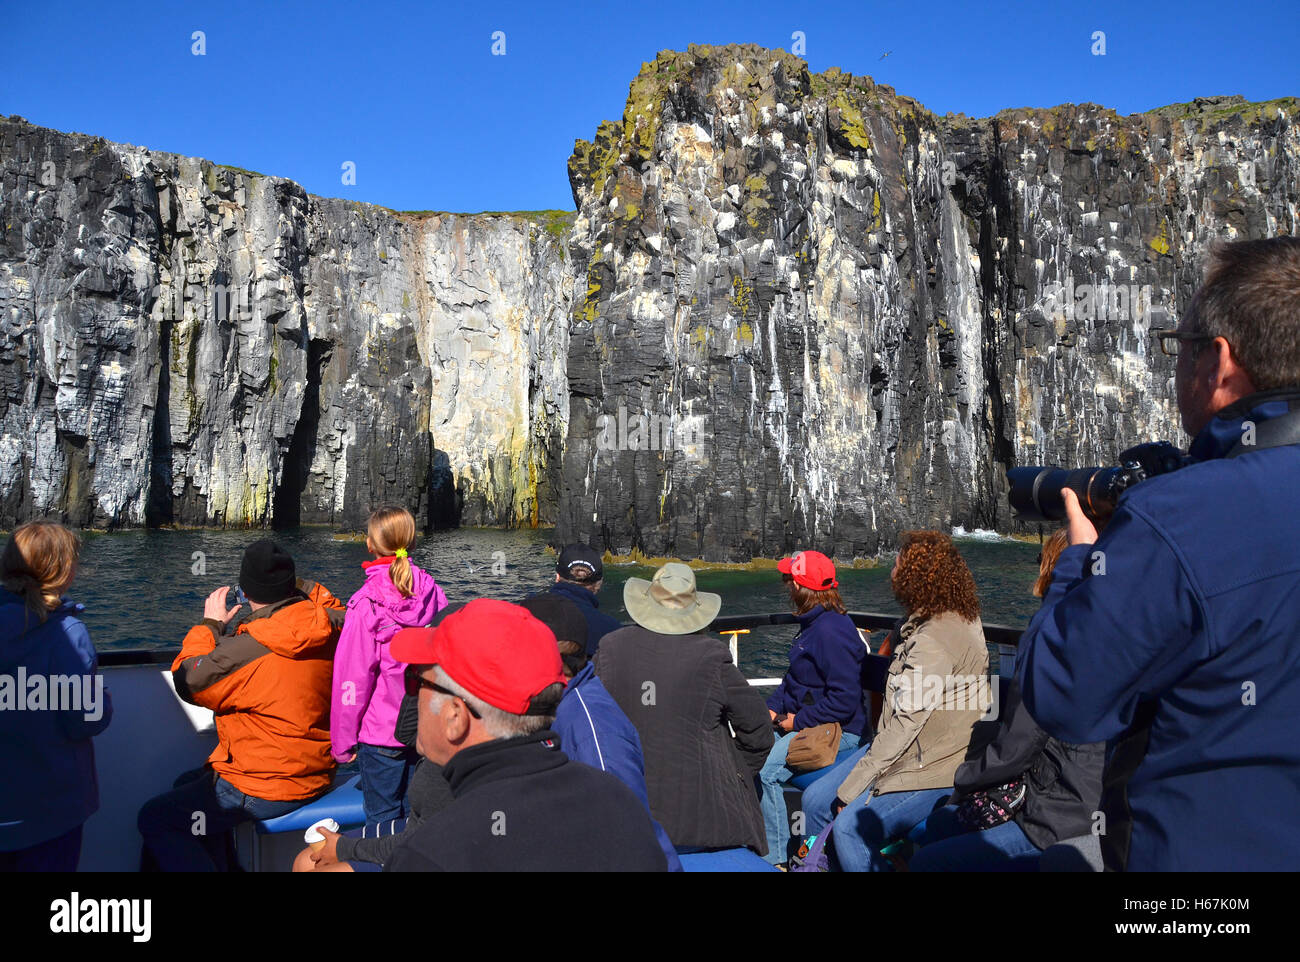 Les falaises de l'île de mai, Fife, comme vu à partir d'un voyage d'une journée en bateau de croisière avec ses passagers à leur retour à l'afficheur. Banque D'Images